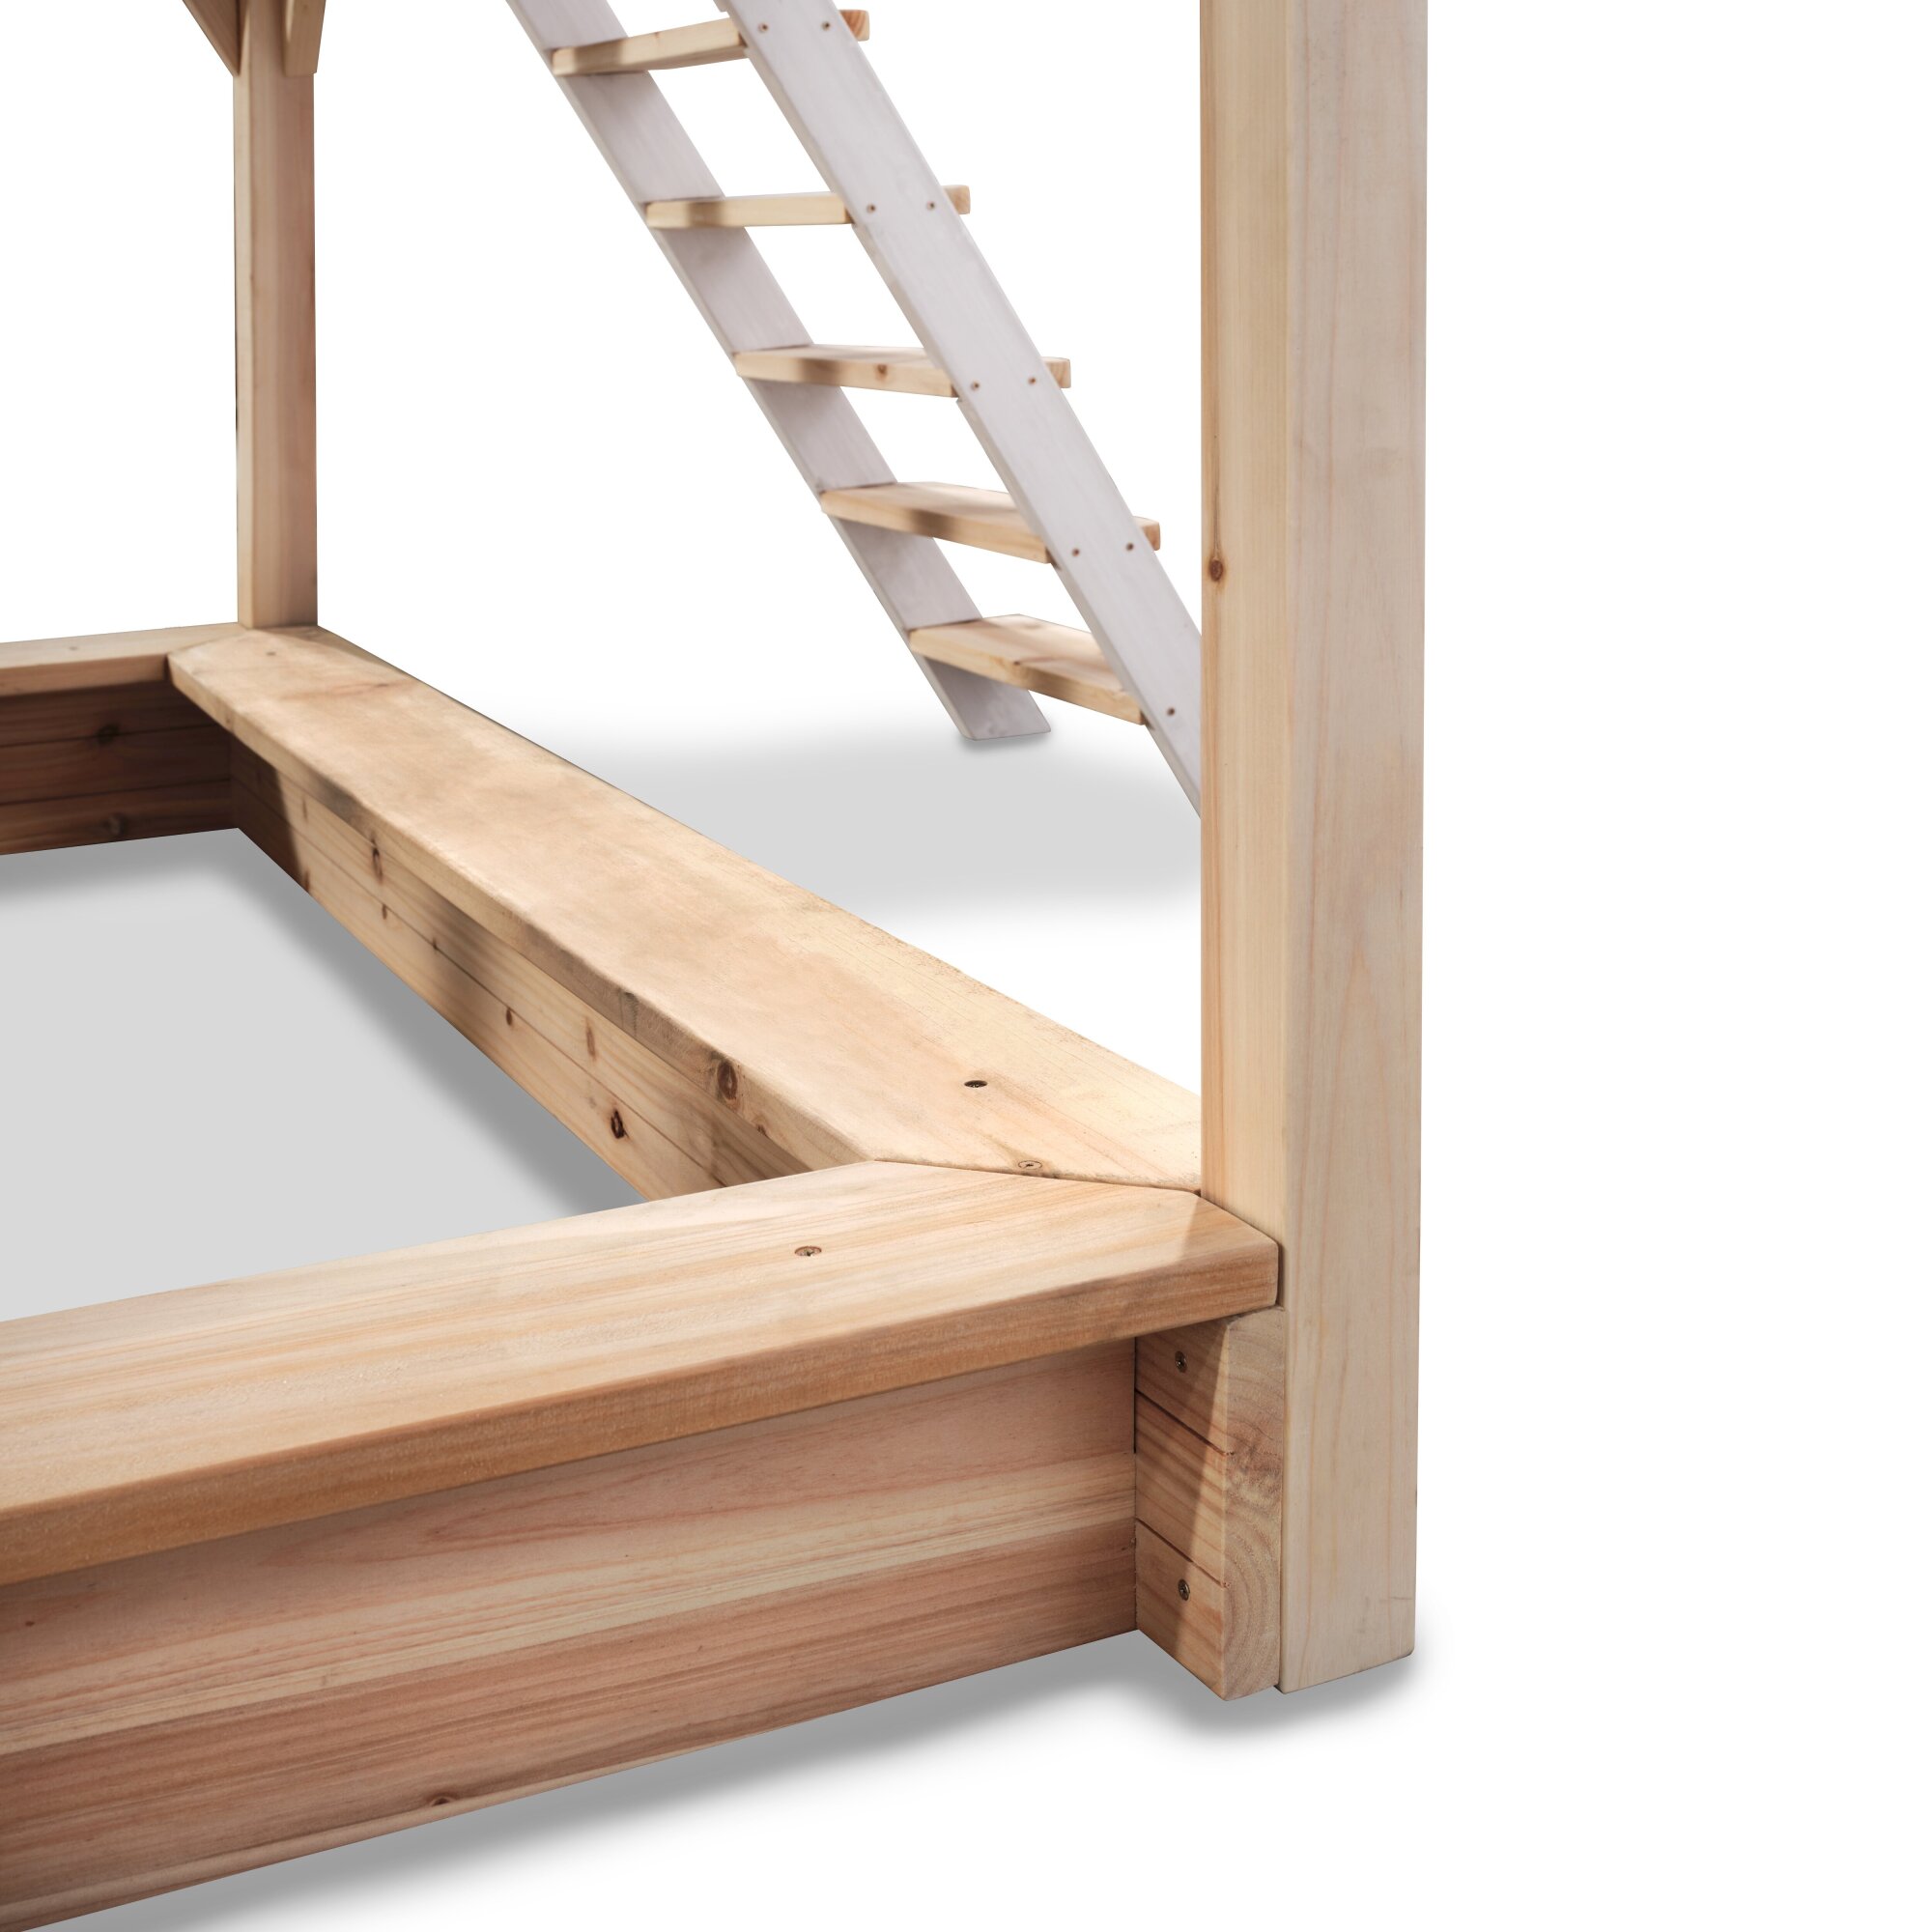 EXIT Loft 750 wooden playhouse - grey